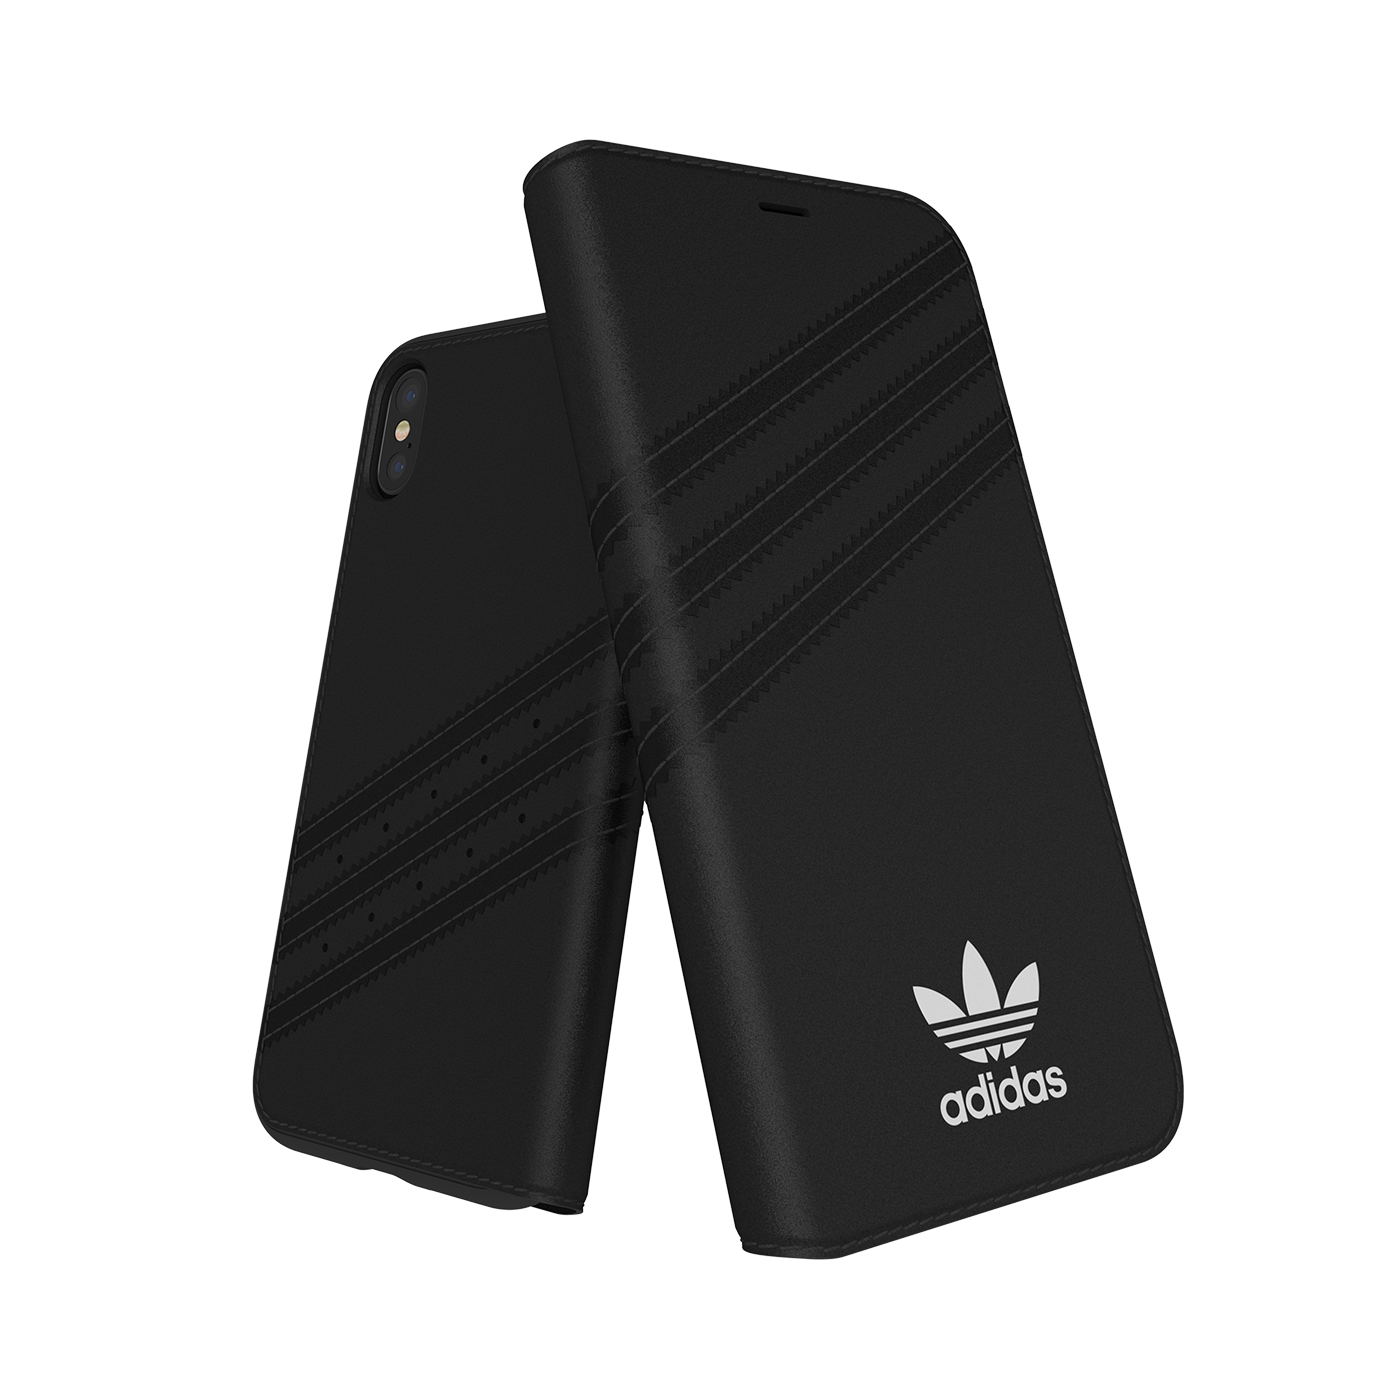 adidas Originals 3-Stripes Booklet Case Black iPhone 1 28353